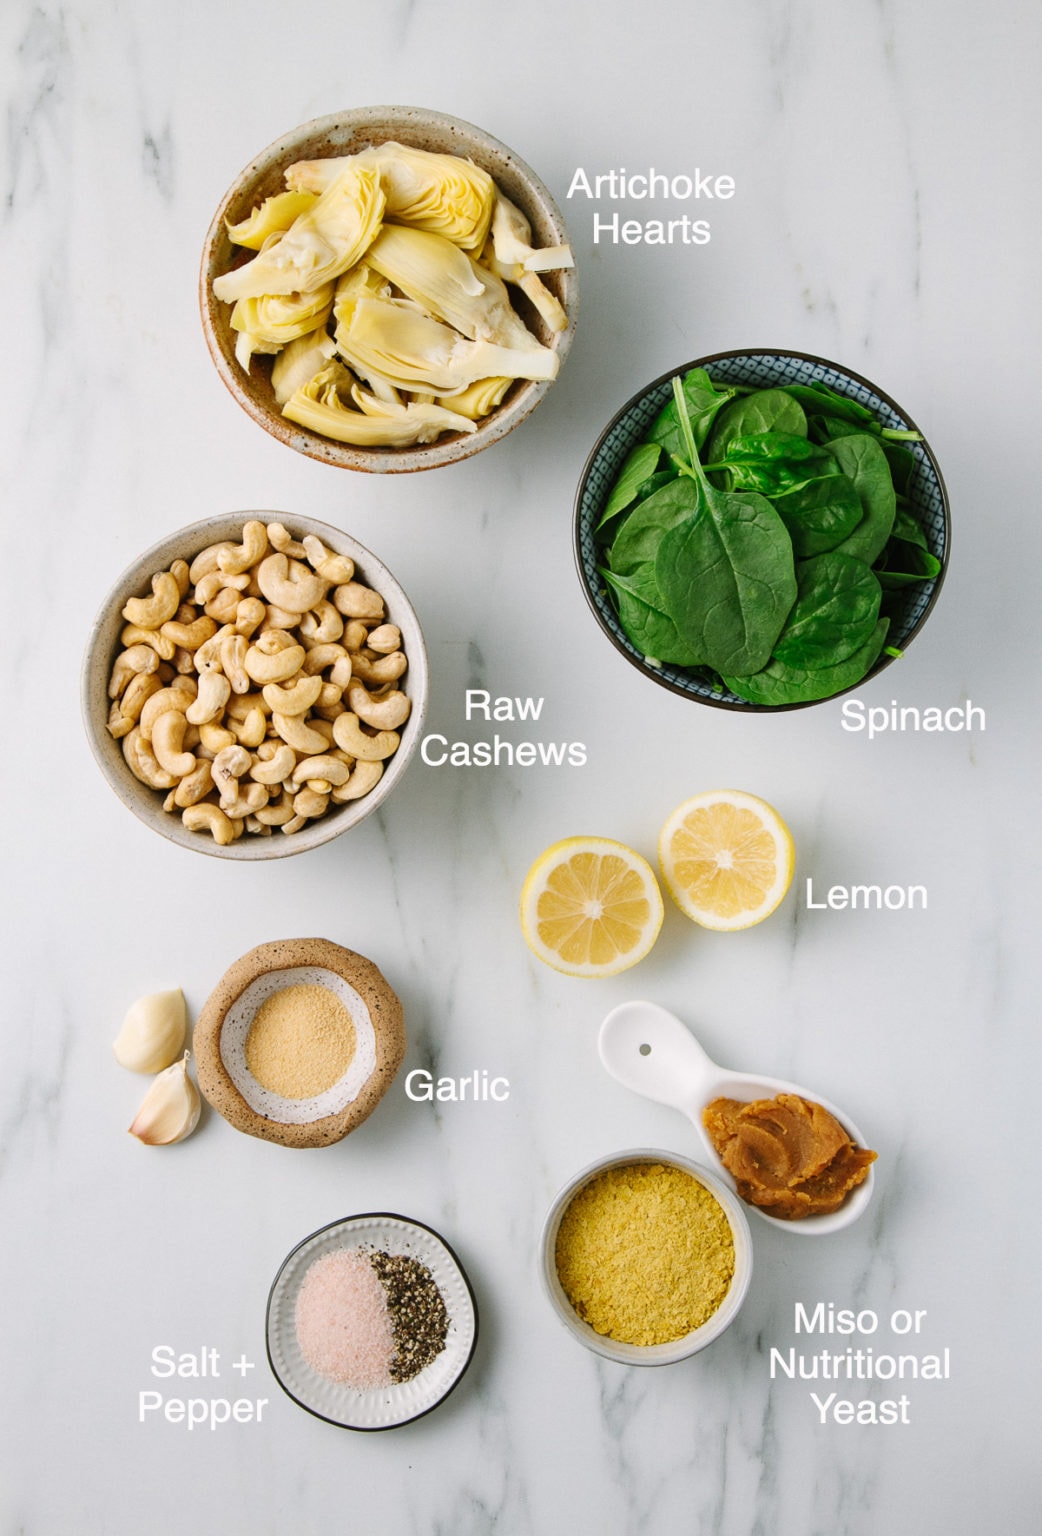 Vegan Spinach Artichoke Dip (Quick + Easy) - The Simple Veganista